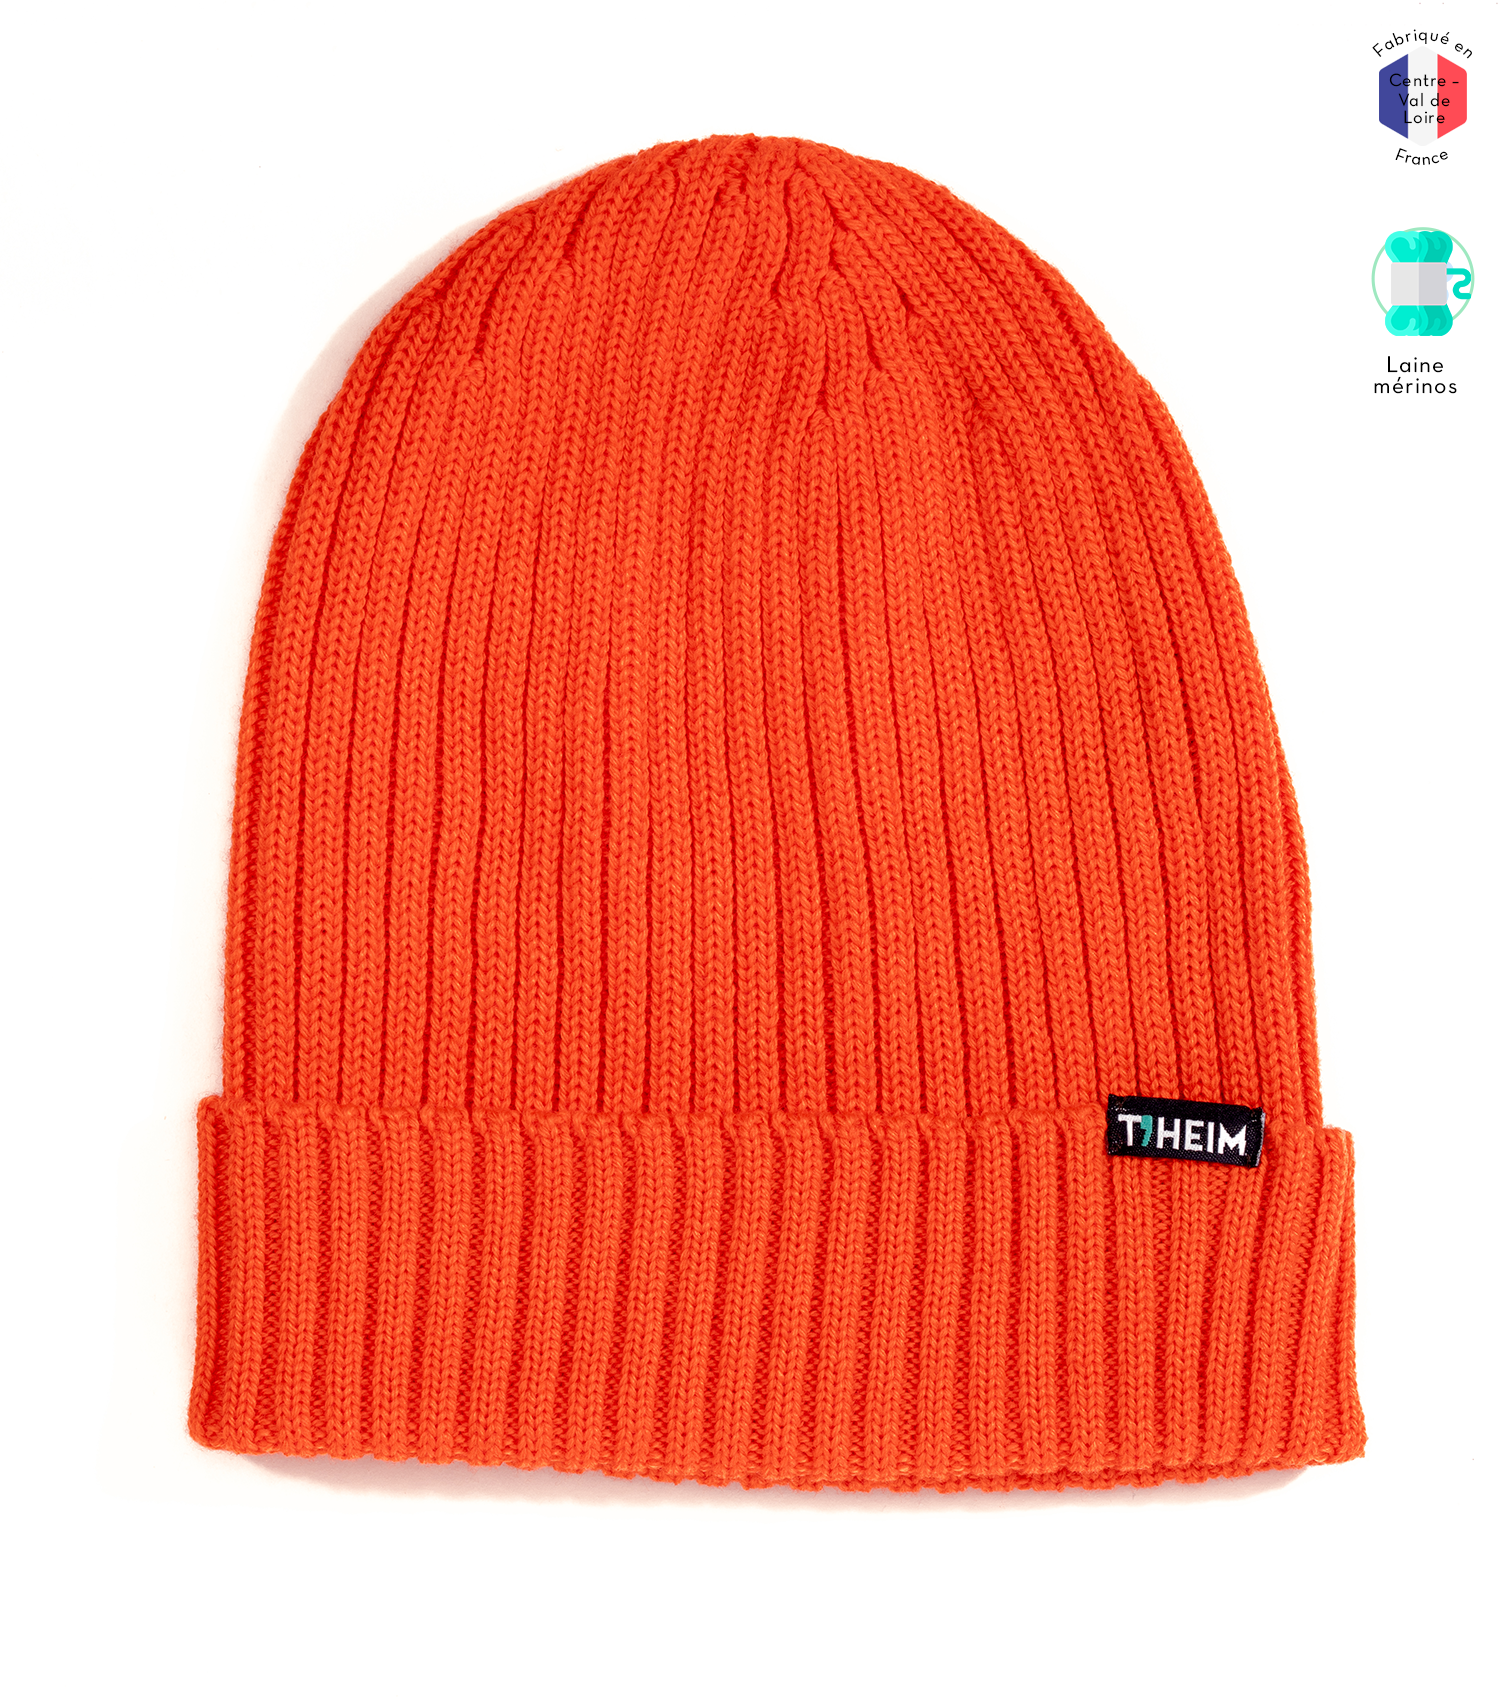 theim-bonnet-laine-merinos-made-in-france-orange-fluo-vitamine-c-1500x1700px